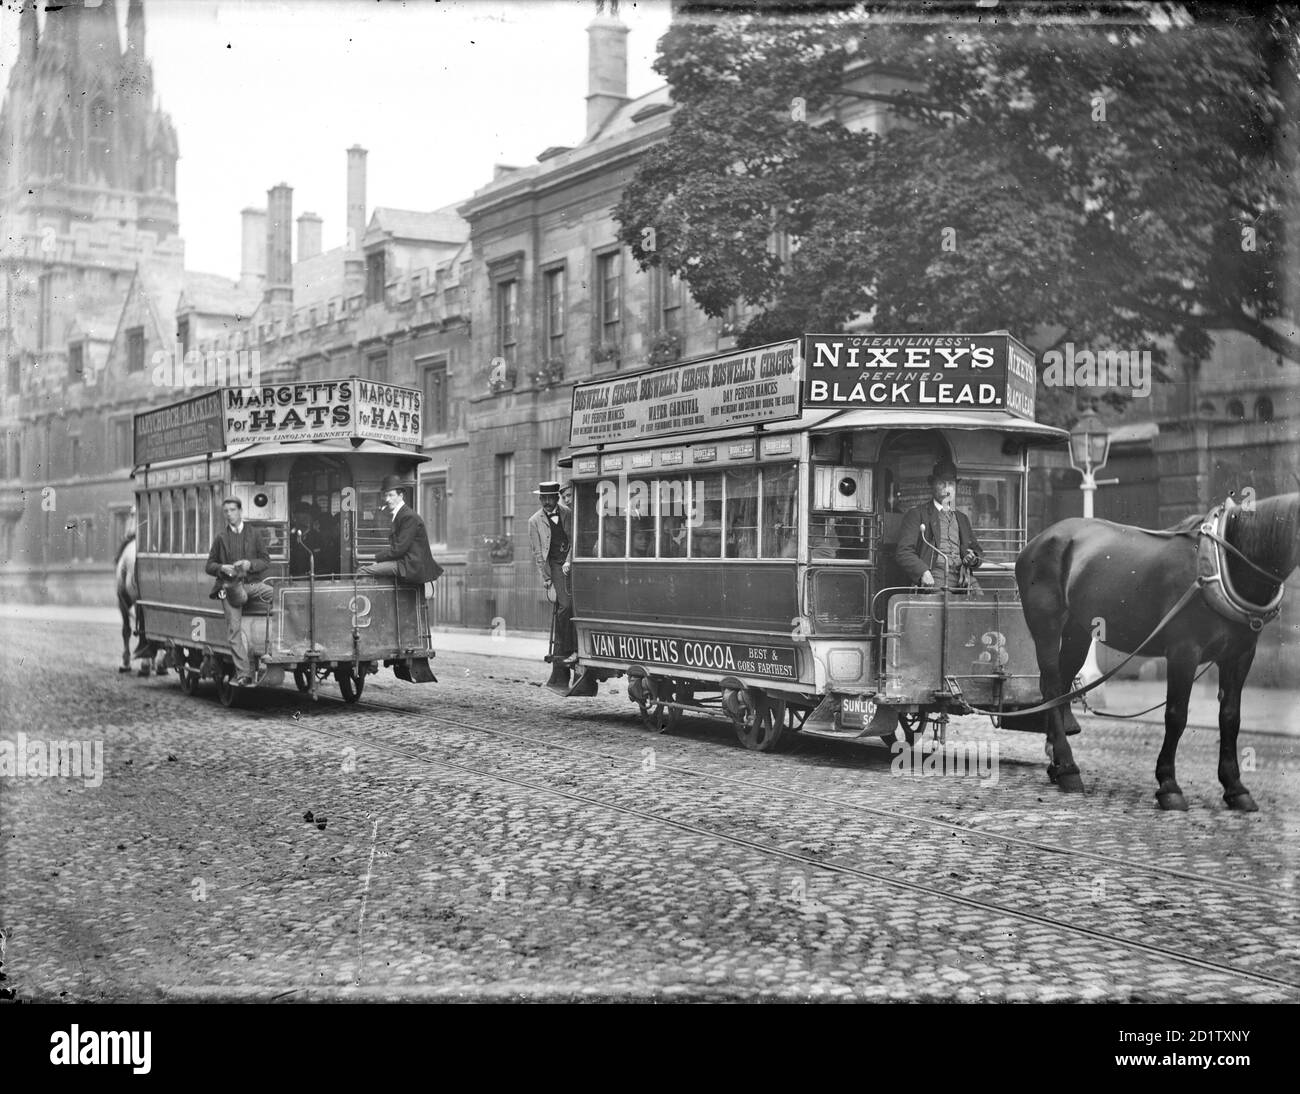 High Street, Oxford, Oxfordshire. Zwei Pferdebahnen, die in der Straße vorbeifahren, mit Werbetafeln, die an den Dächern angebracht sind. Magdalen Bridge wurde im Jahr 1899 von der Oxford Local Board erweitert, um Platz für Pferdestraßenbahnen, aber von 1913 Autobusse hatten ihren Auftritt. Stockfoto